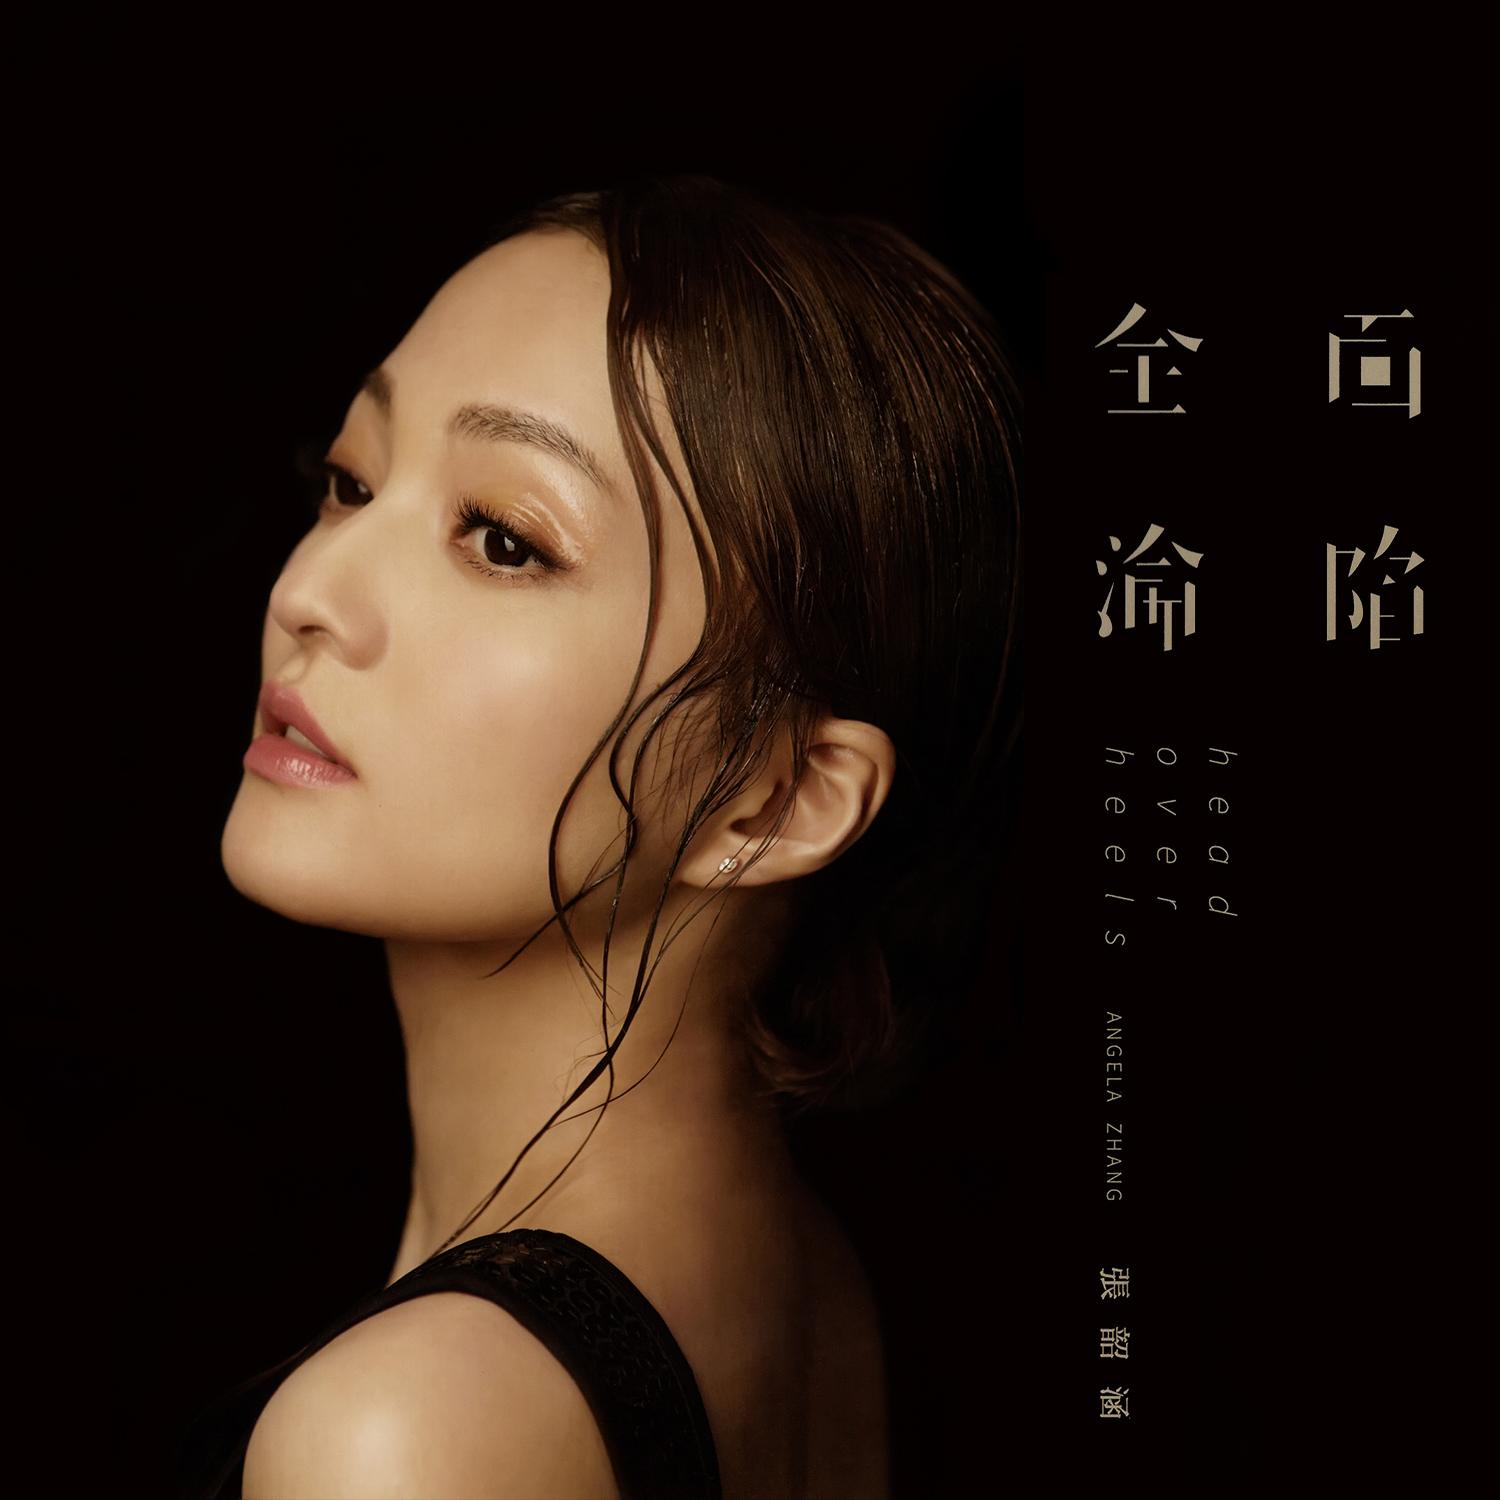 收录于张韶涵个人第九张专辑《全面沦陷》中,并作为第五波主打歌曲